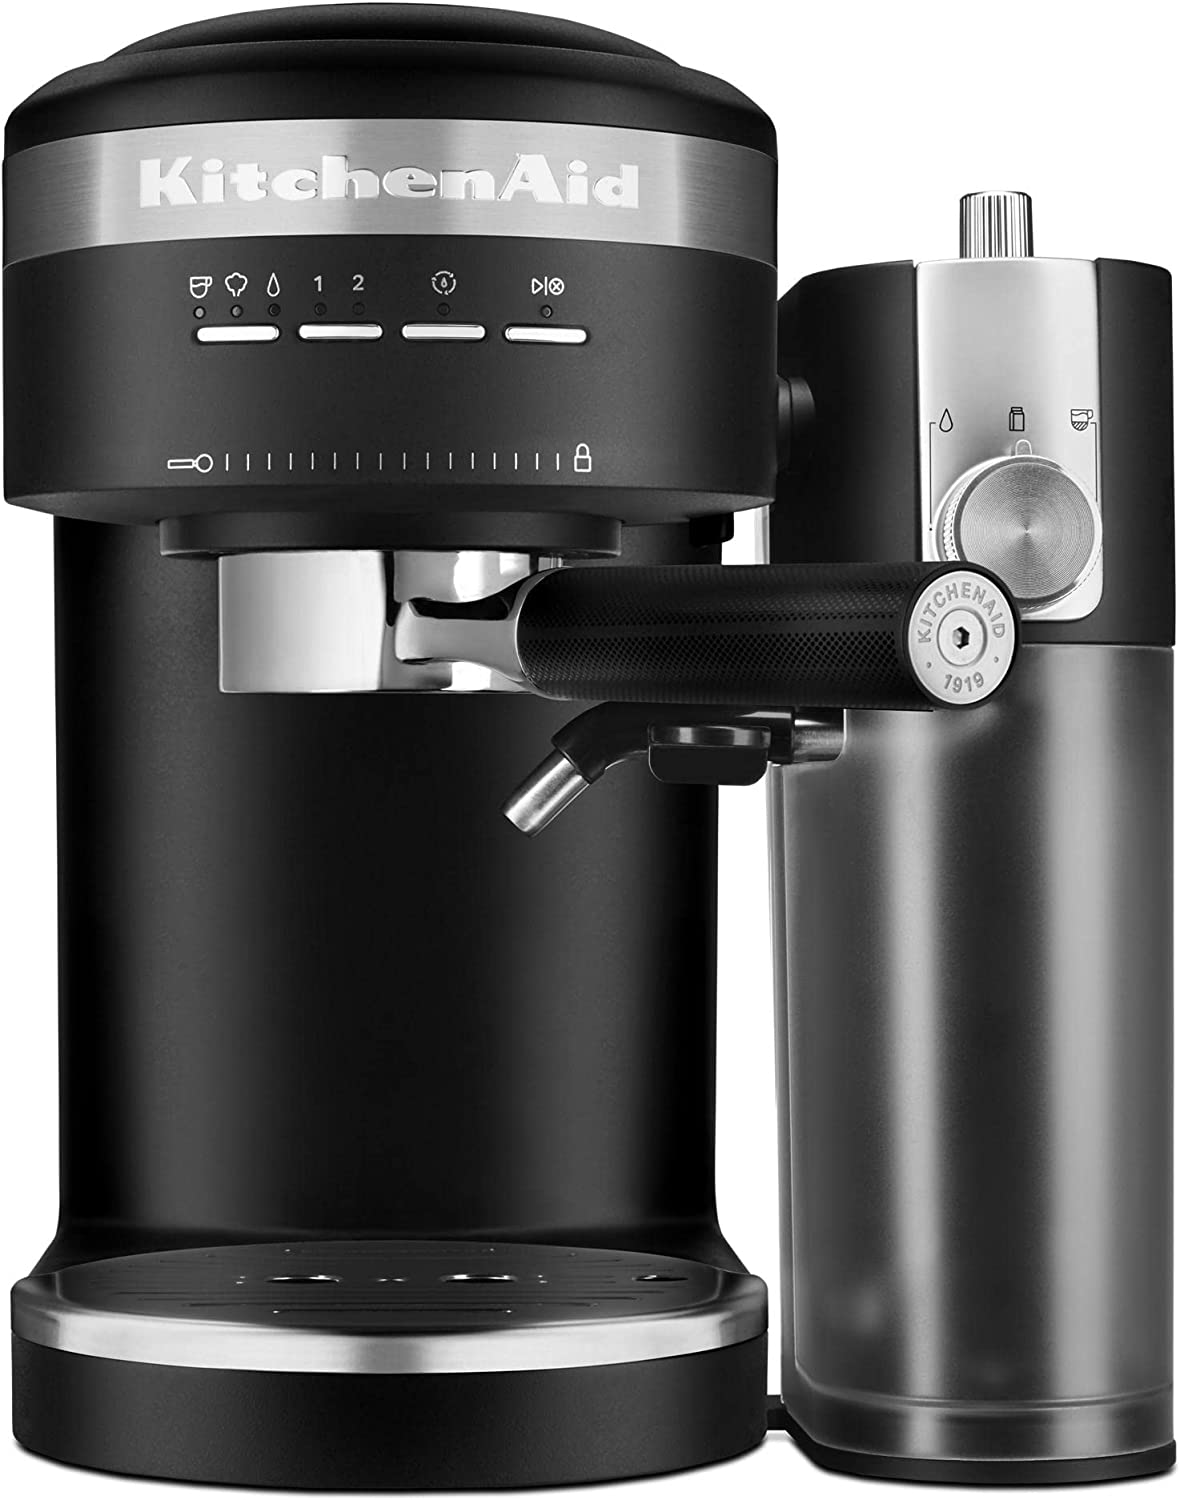 KitchenAid Semi-Automatic Espresso Machine w/ Automatic Milk Frother Attachment (Matte Black) $184.19 + Free Shipping